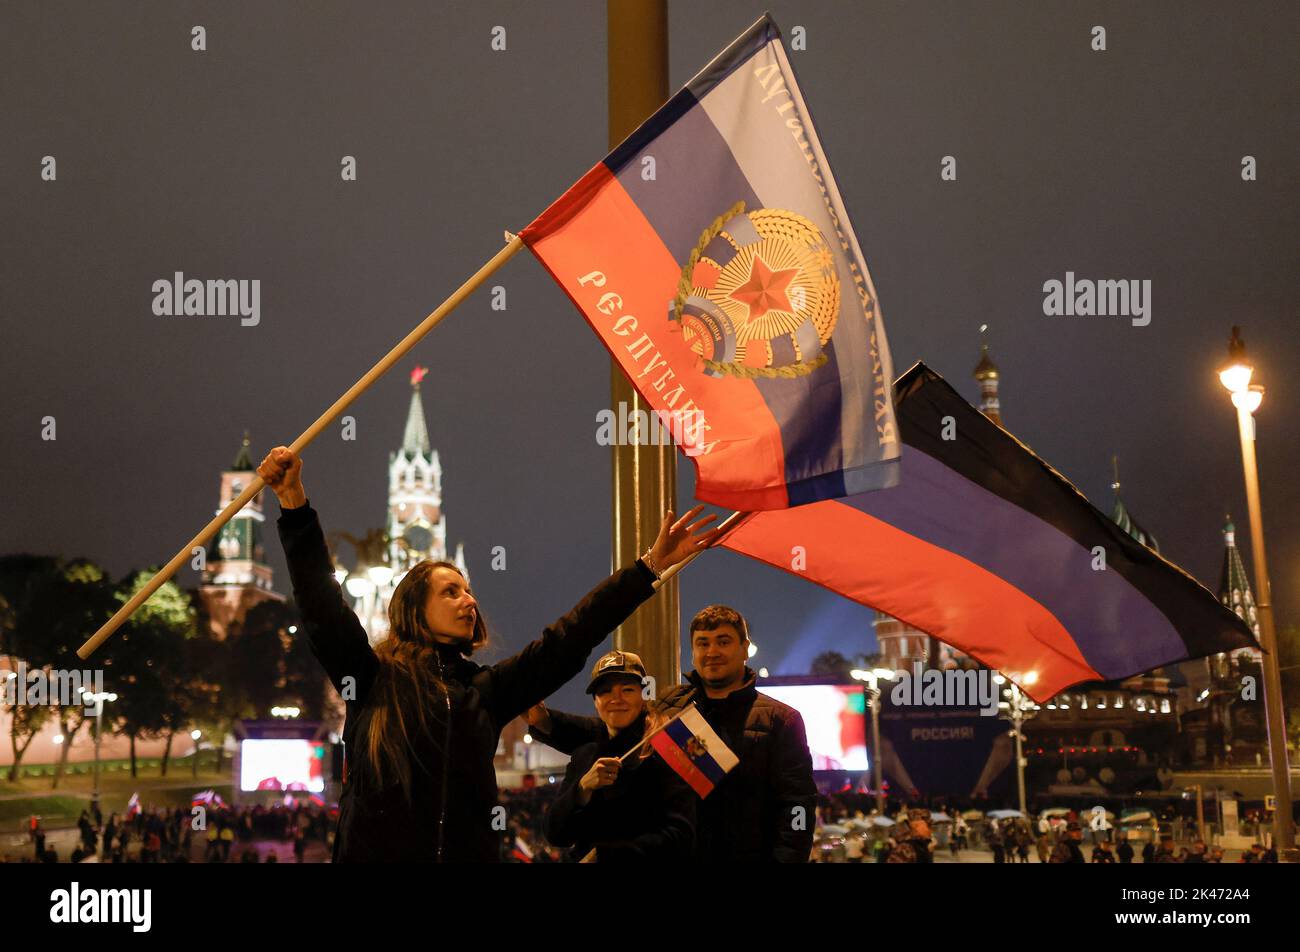 Les gens ont des drapeaux des républiques autoproclamées du peuple Donetsk et de Lugansk tandis que des spectateurs se rassemblent devant les écrans pour assister à un concert marquant l'annexion déclarée des territoires sous contrôle russe de quatre régions ukrainiennes de Donetsk, Luhansk, Kherson et Zaporizhjhia, Après avoir tenu ce que les autorités russes ont appelé des référendums dans les zones occupées de l'Ukraine qui ont été condamnées par Kiev et les gouvernements du monde entier, près de la place Rouge dans le centre de Moscou, Russie, 30 septembre 2022. PHOTOGRAPHE REUTERS/REUTERS Banque D'Images